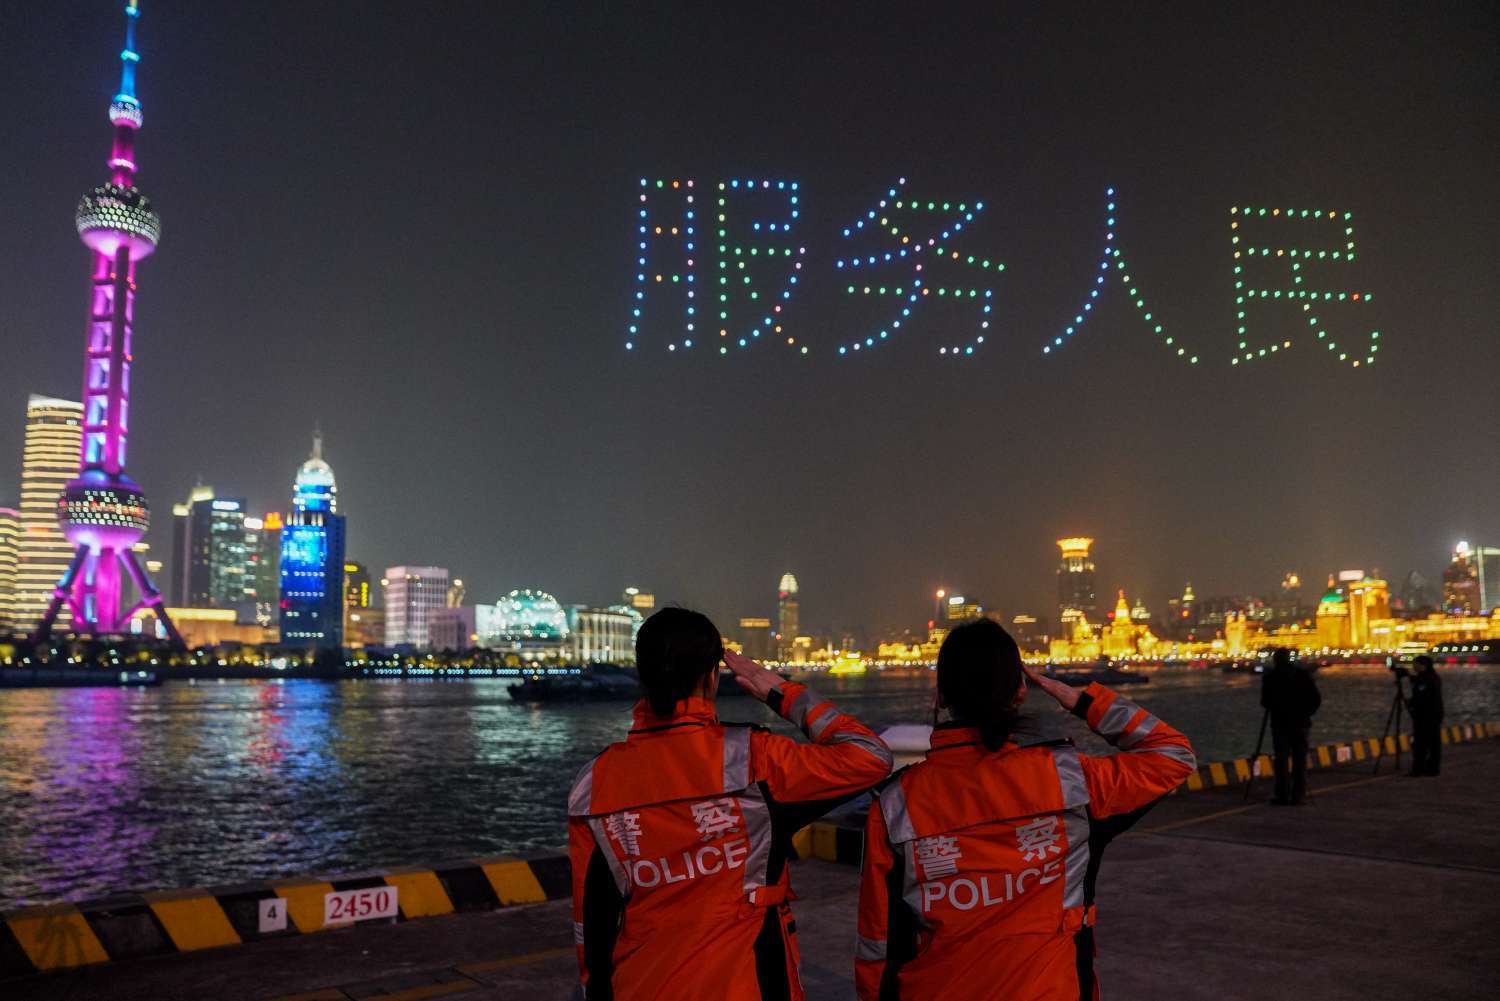 今夜北外滩格外美丽 1100架无人机腾空祝首个中国人民警察节